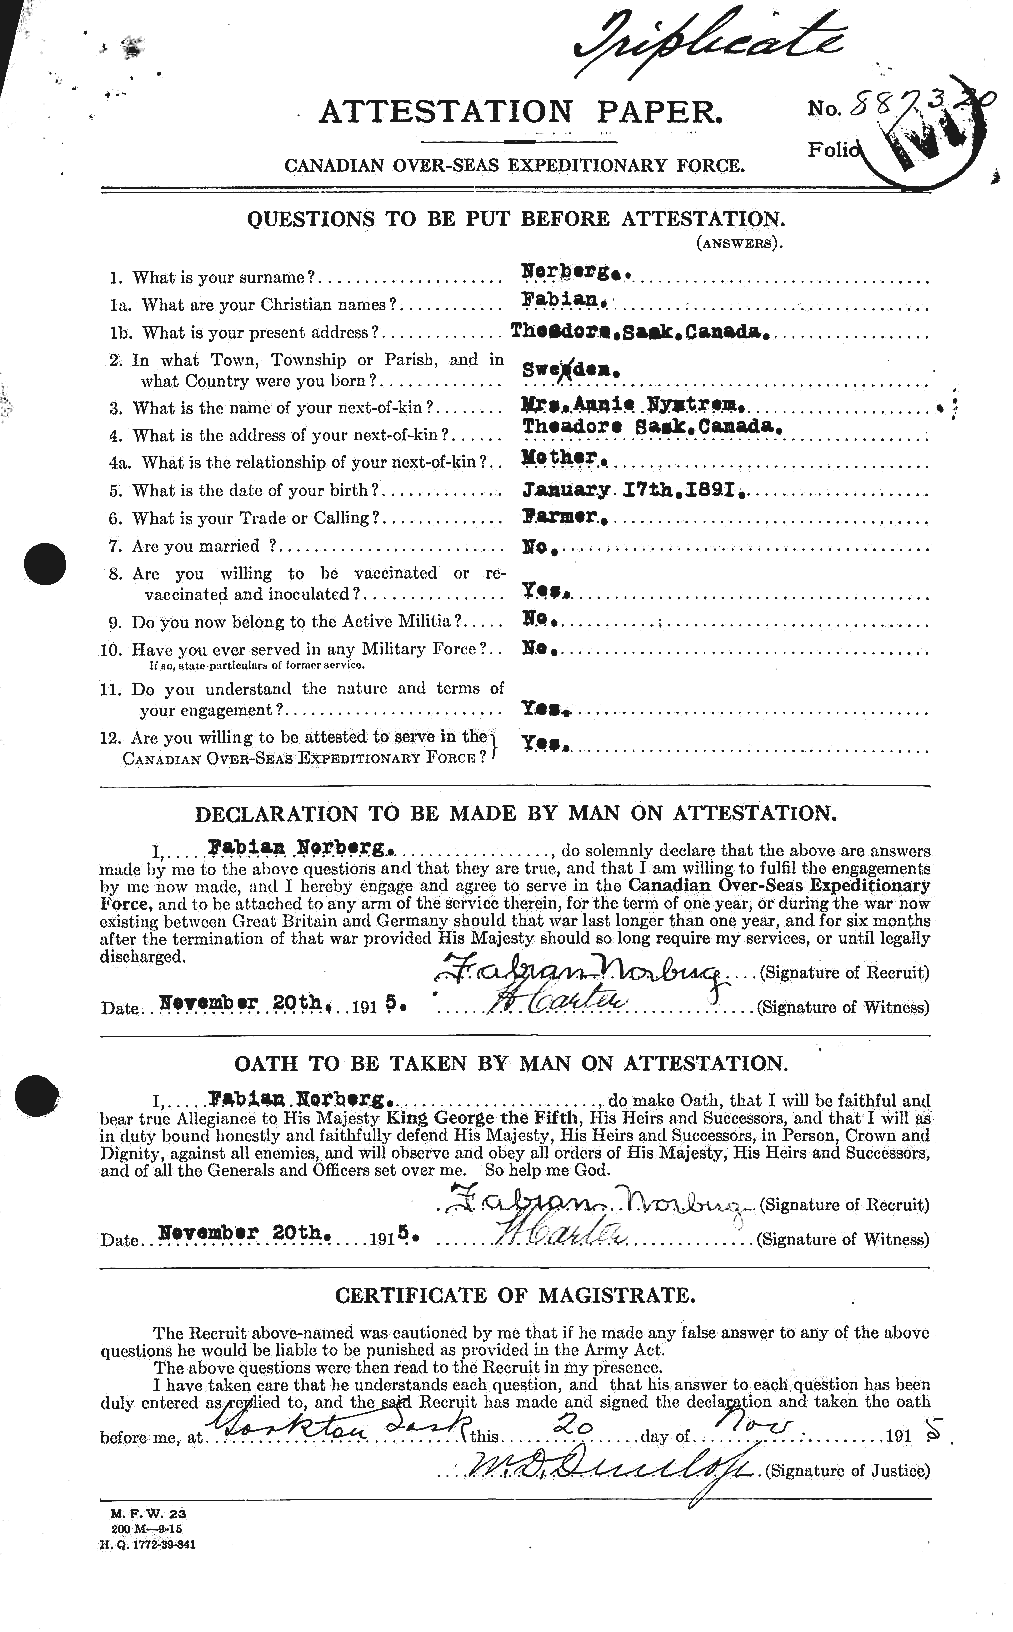 Dossiers du Personnel de la Première Guerre mondiale - CEC 550160a